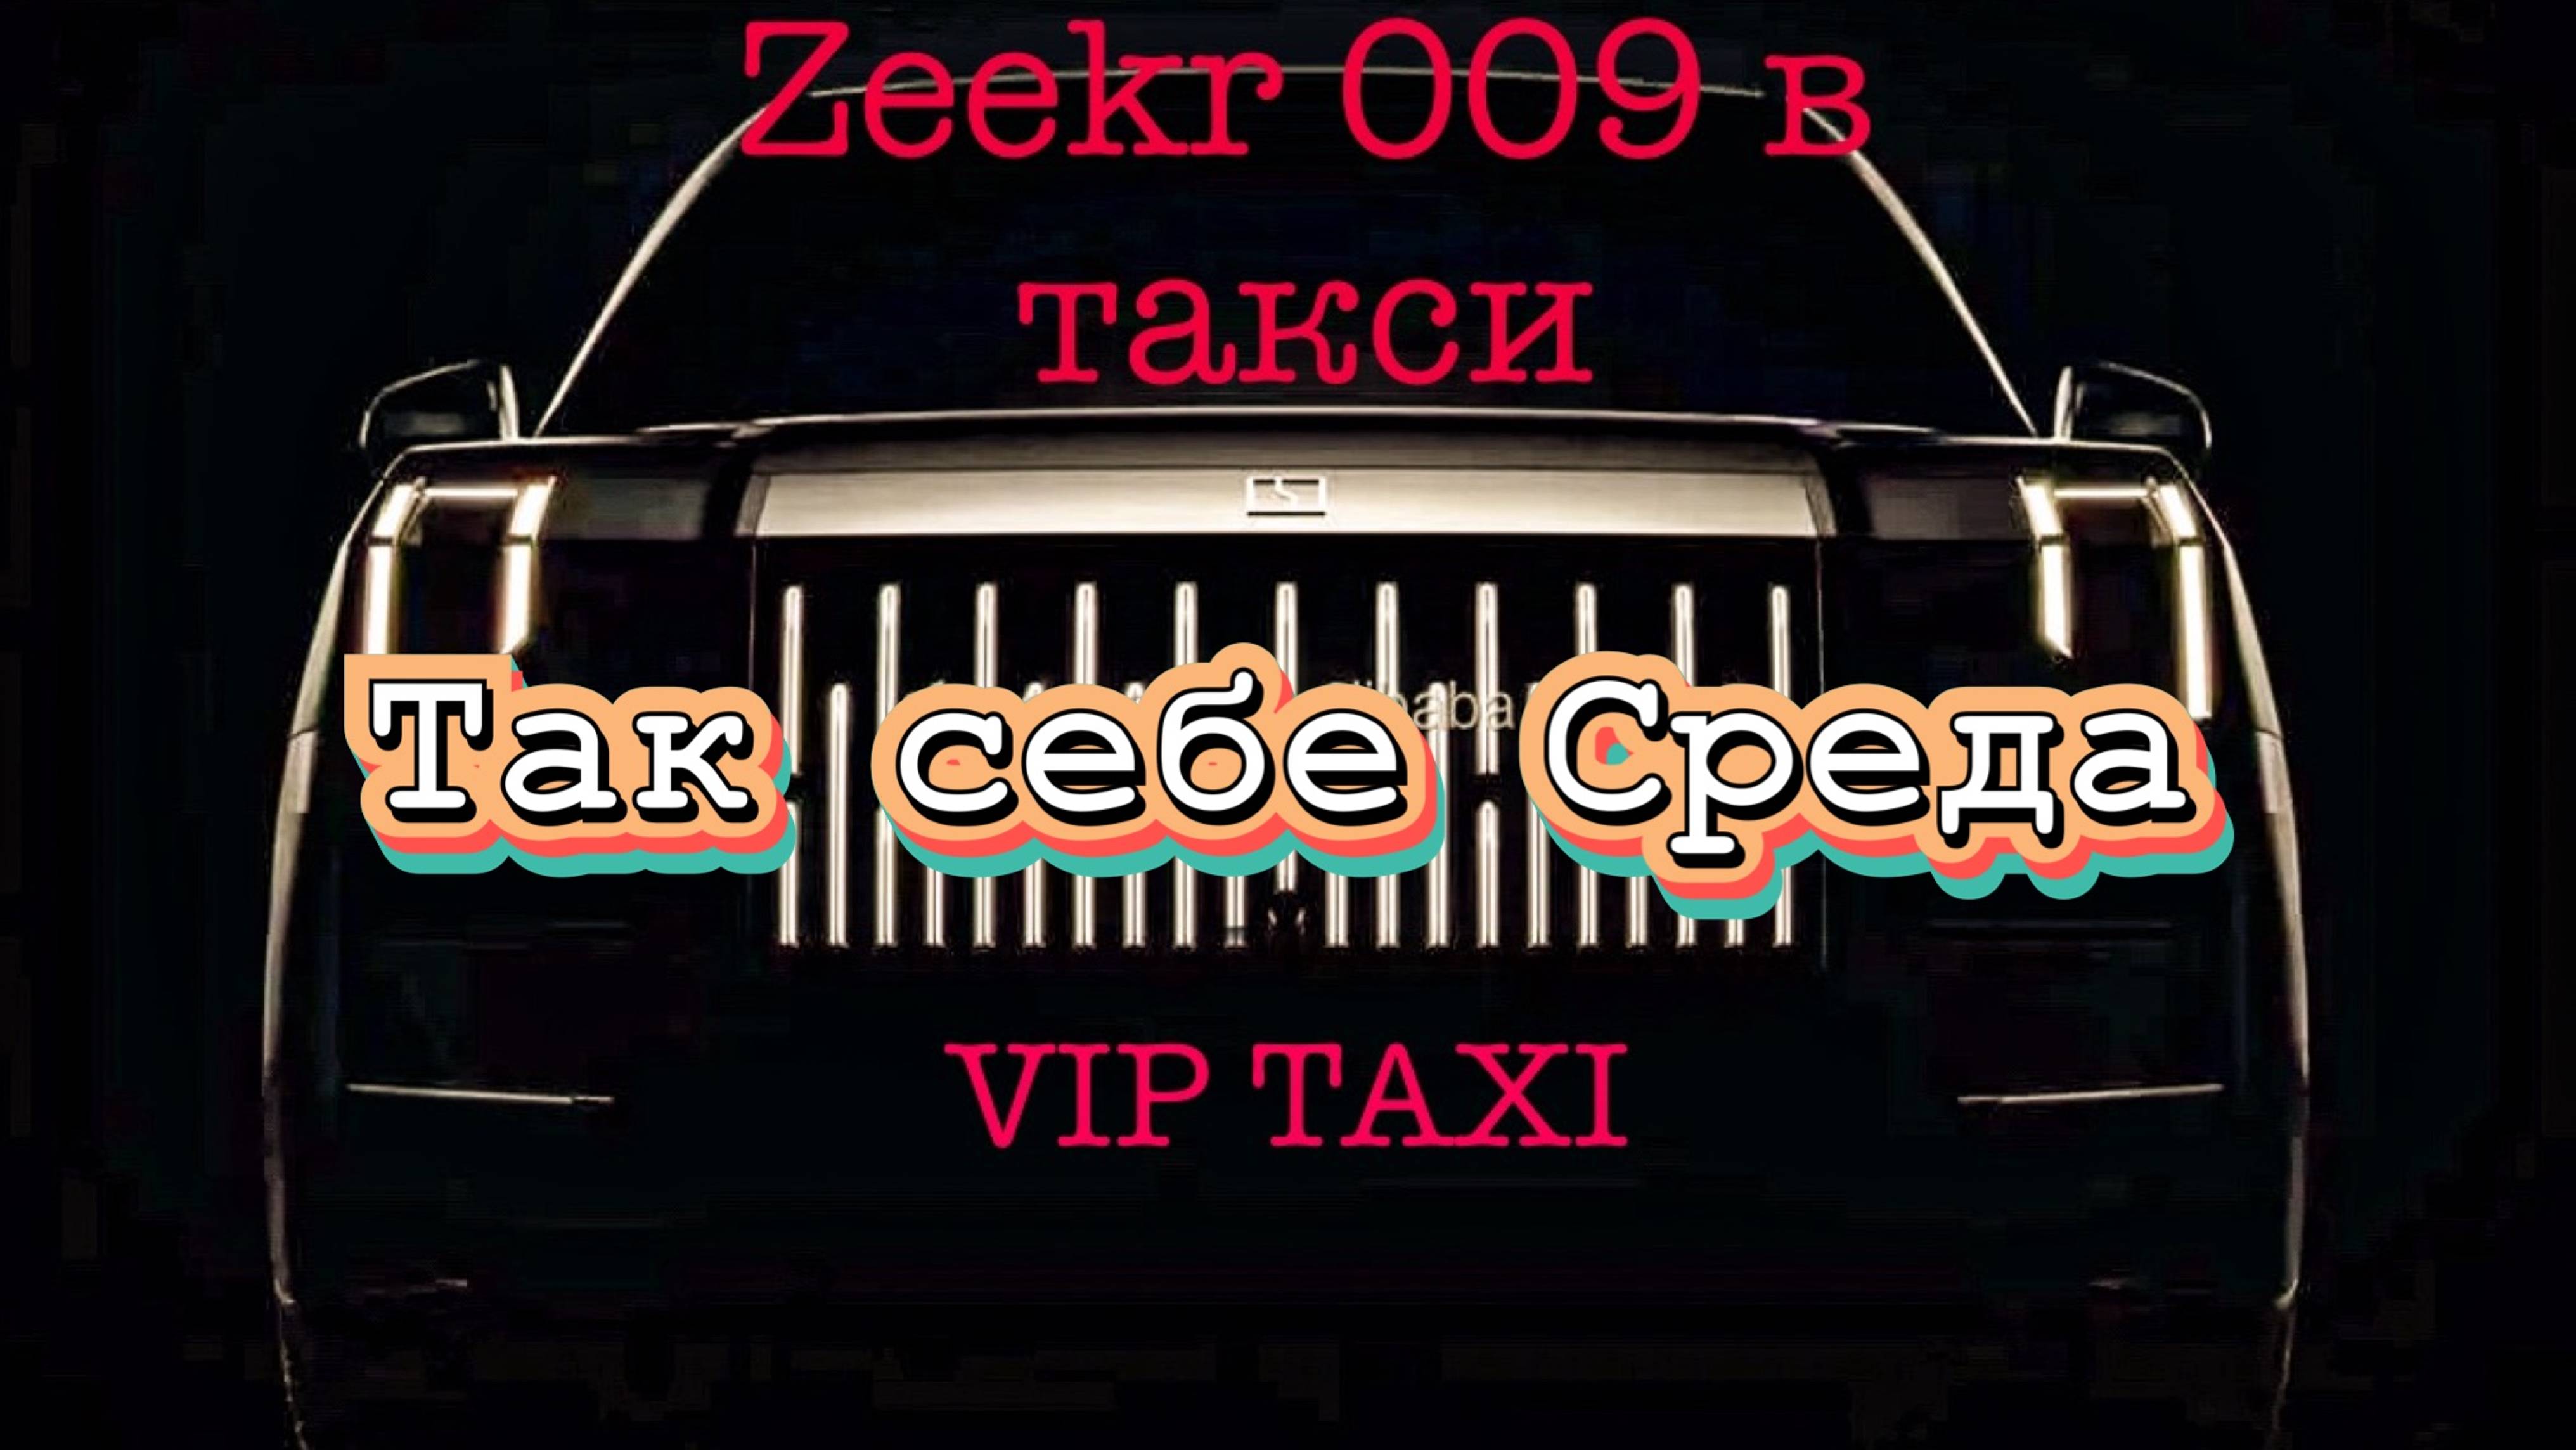 Среда в vip такси /таксую на zeekr009/elite taxi/яндекс такси#elite #taxi #vip #zeekr #yandextaxi